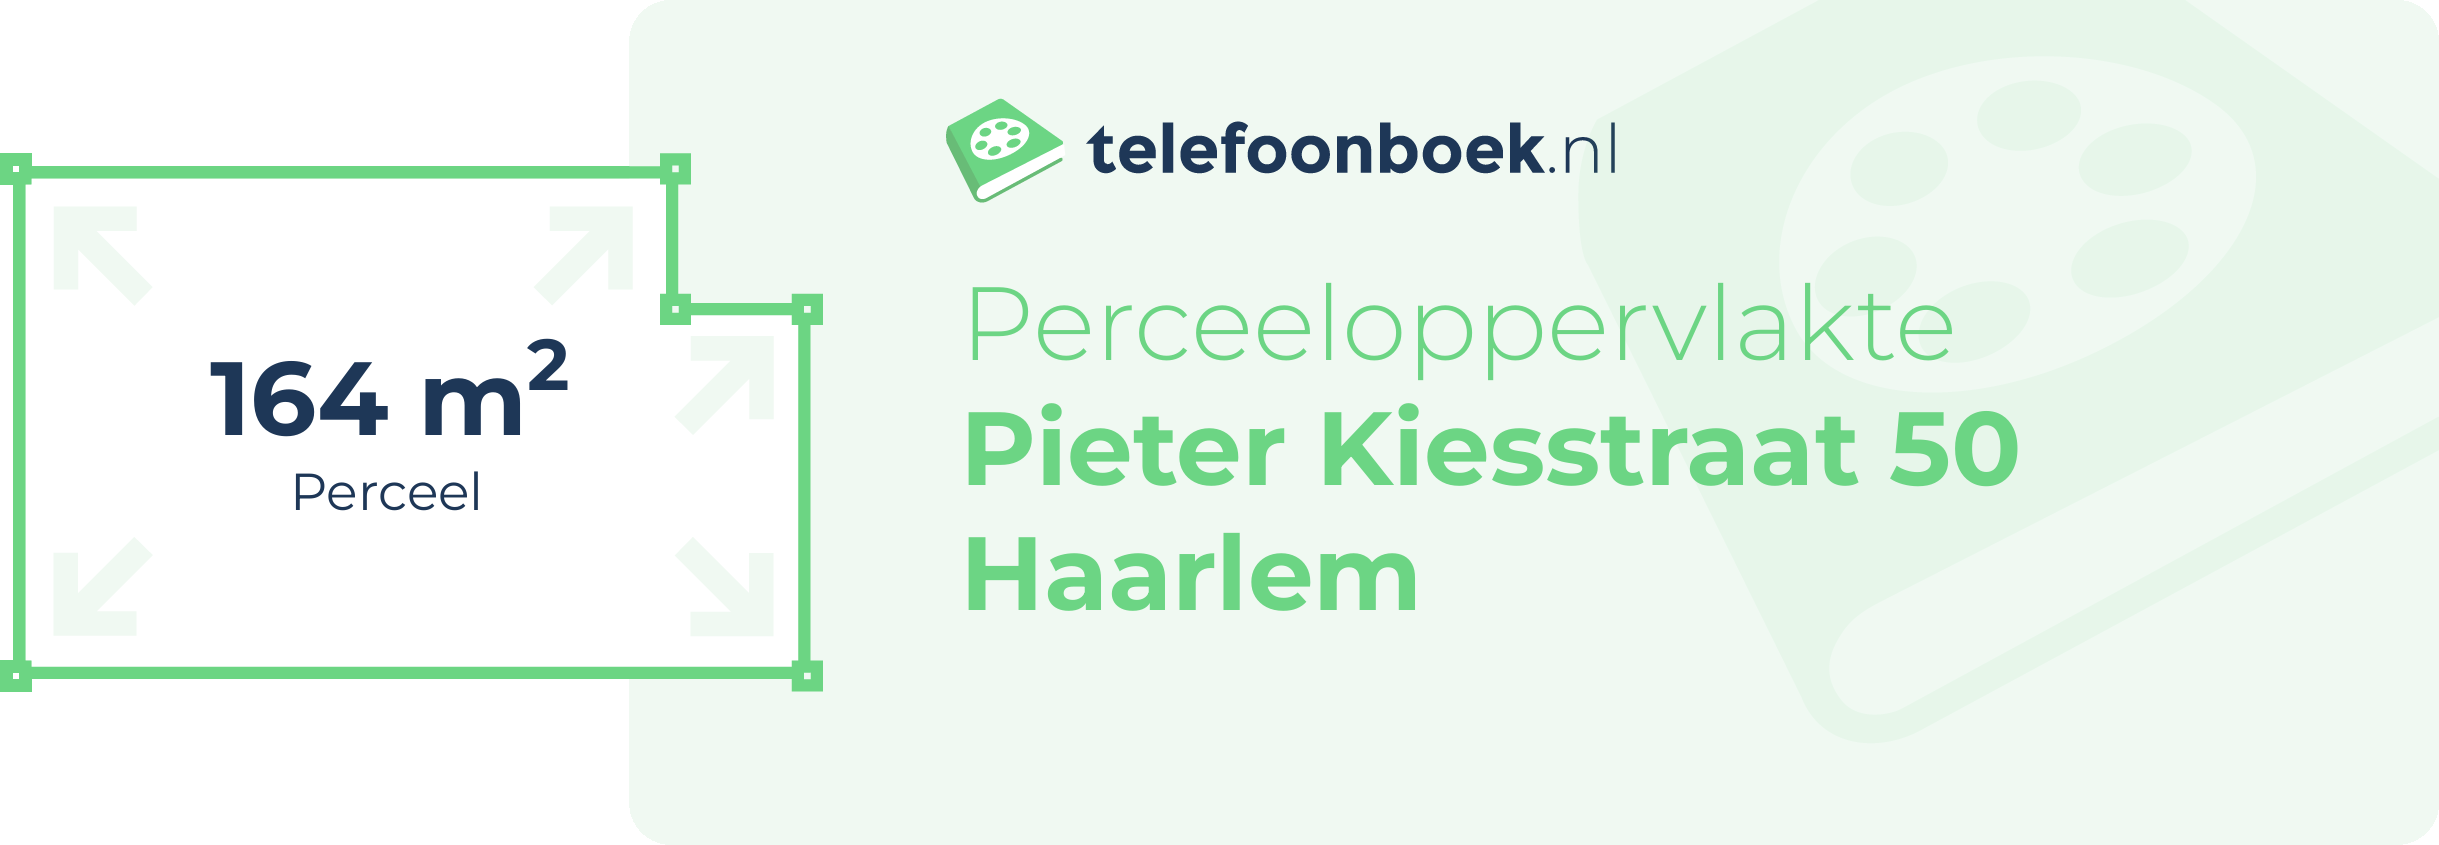 Perceeloppervlakte Pieter Kiesstraat 50 Haarlem